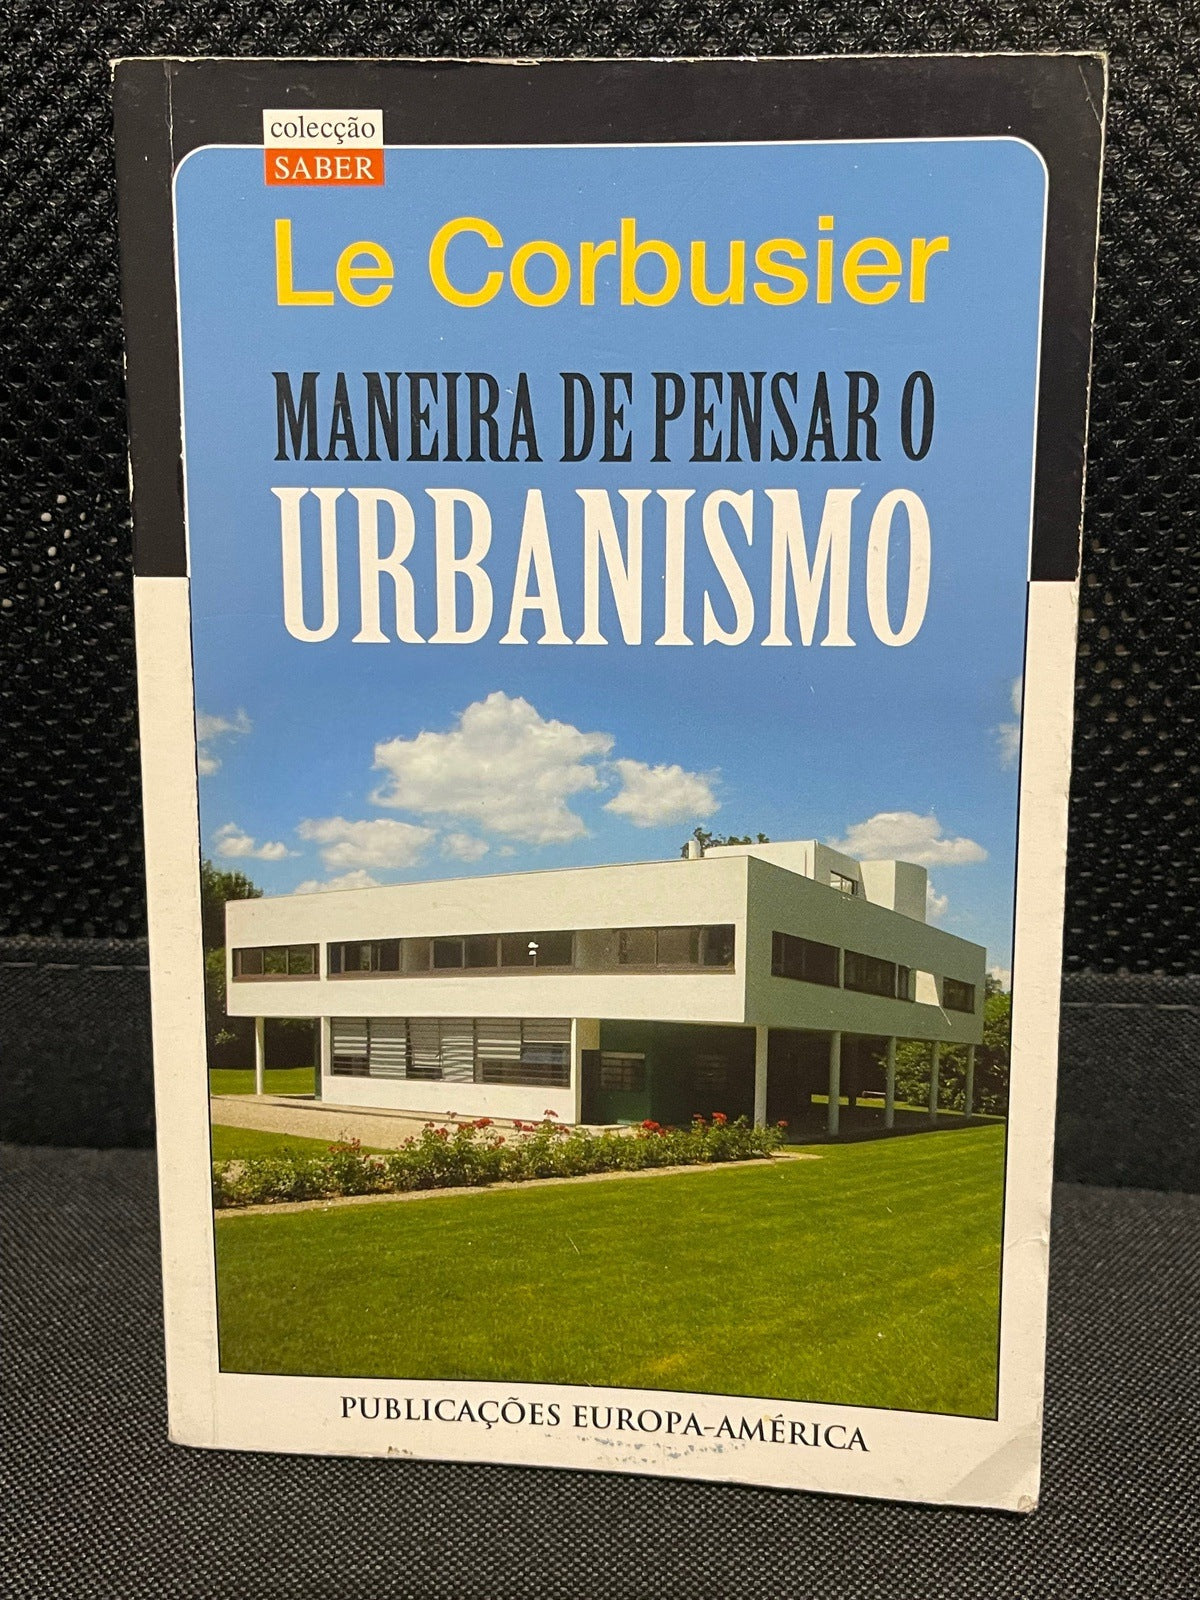 LIVRO Maneira de Pensar o Urbanismo de Le Corbusier - USADO